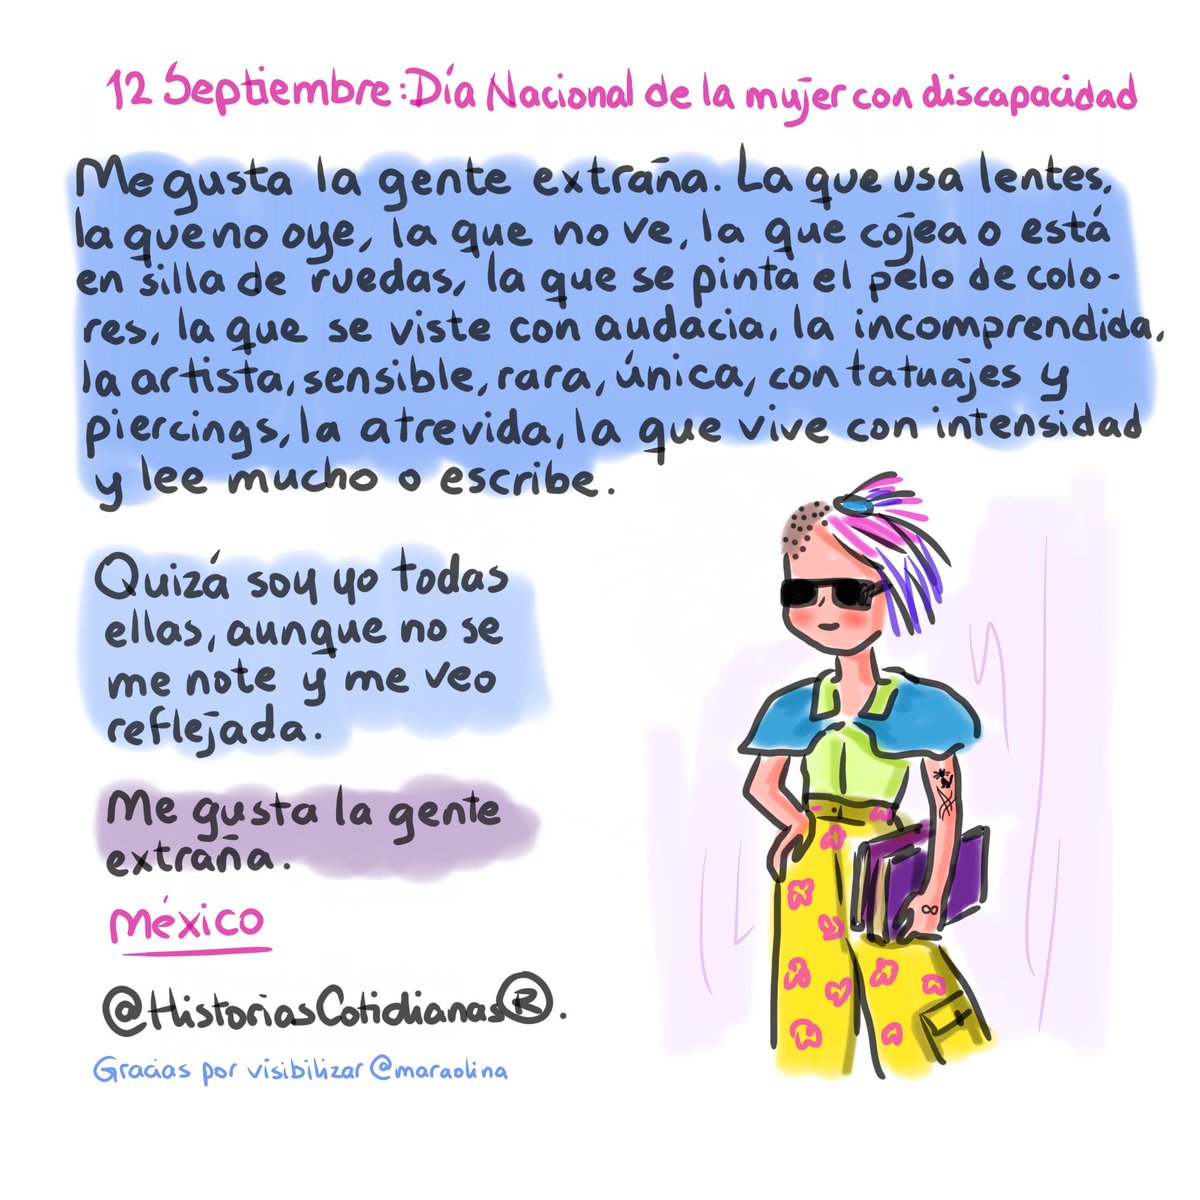 #12septembre #DíaNacionalDeLaMujerConDiscapacidad 
#SoyAutista